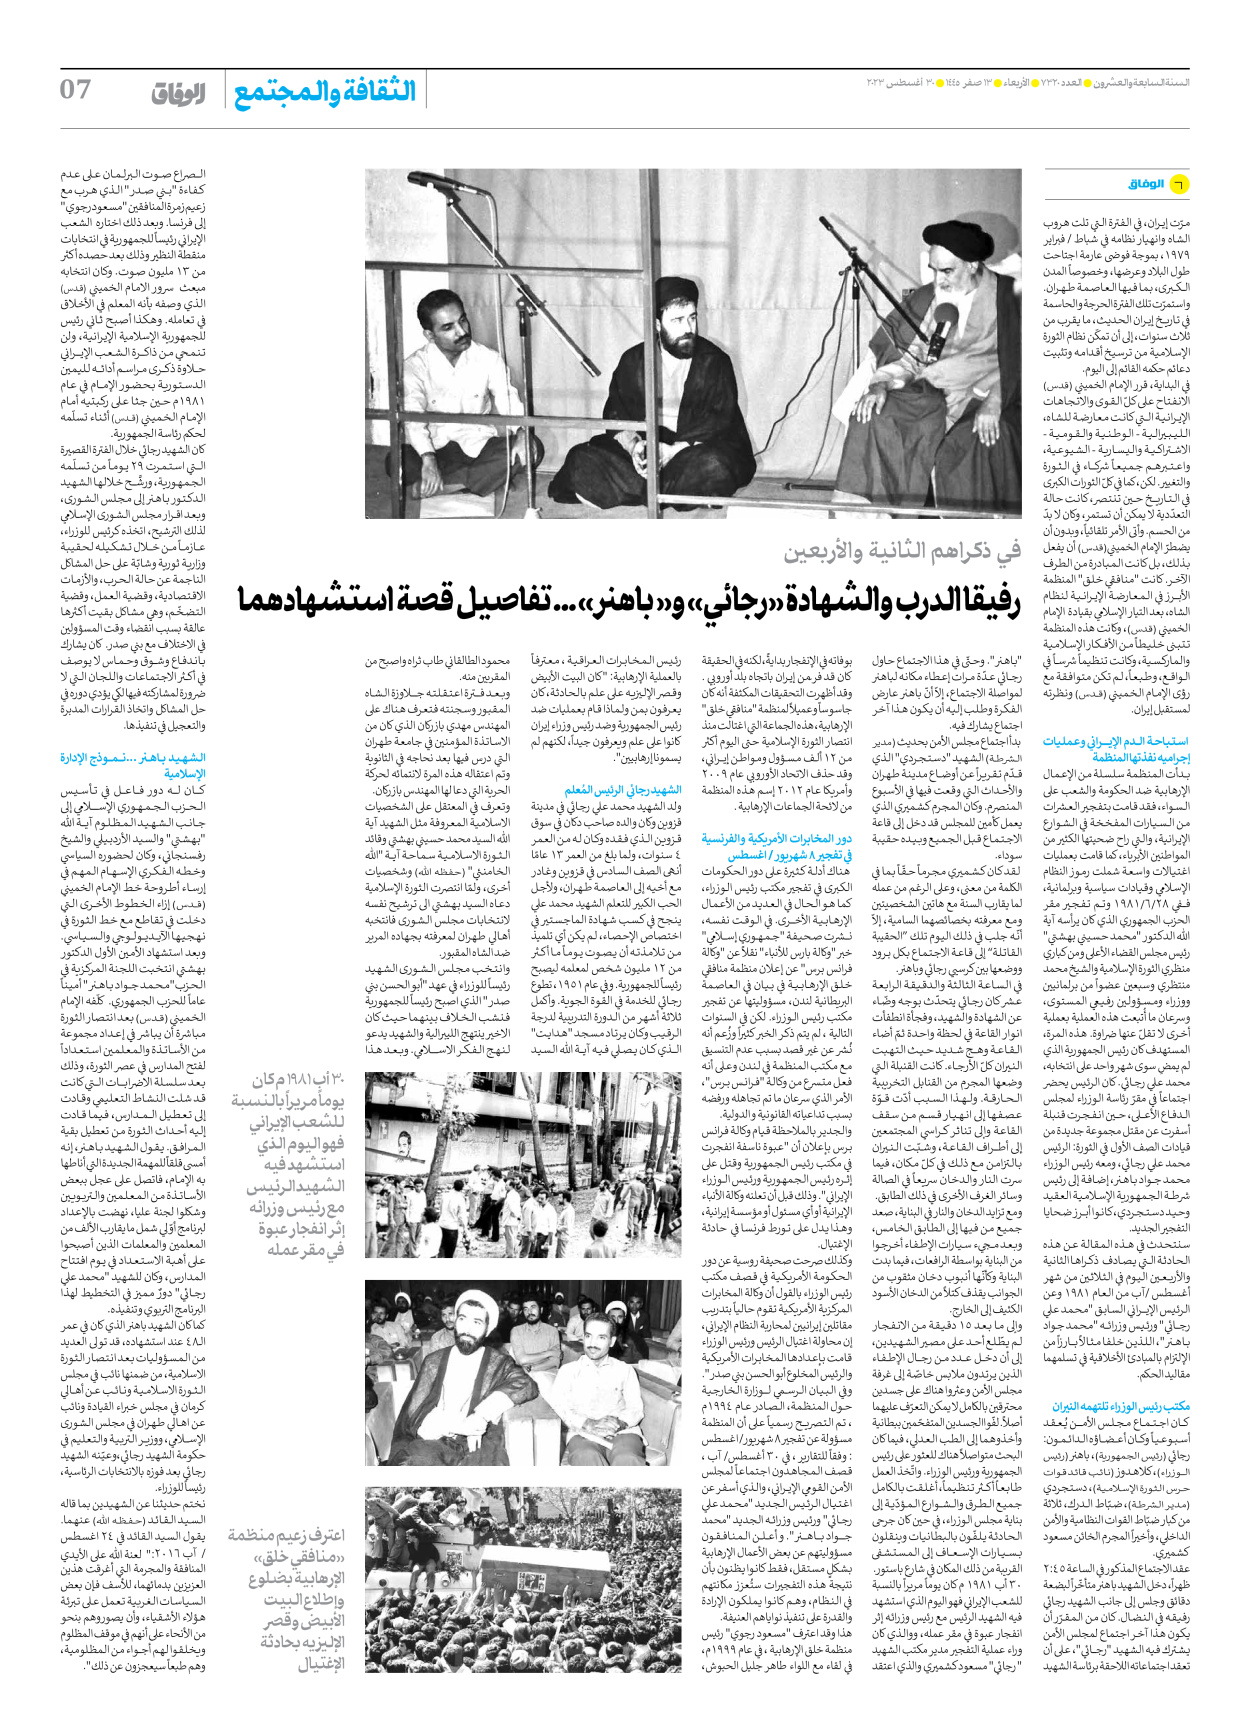 صحیفة ایران الدولیة الوفاق - العدد سبعة آلاف وثلاثمائة وعشرون - ٣٠ أغسطس ٢٠٢٣ - الصفحة ۷